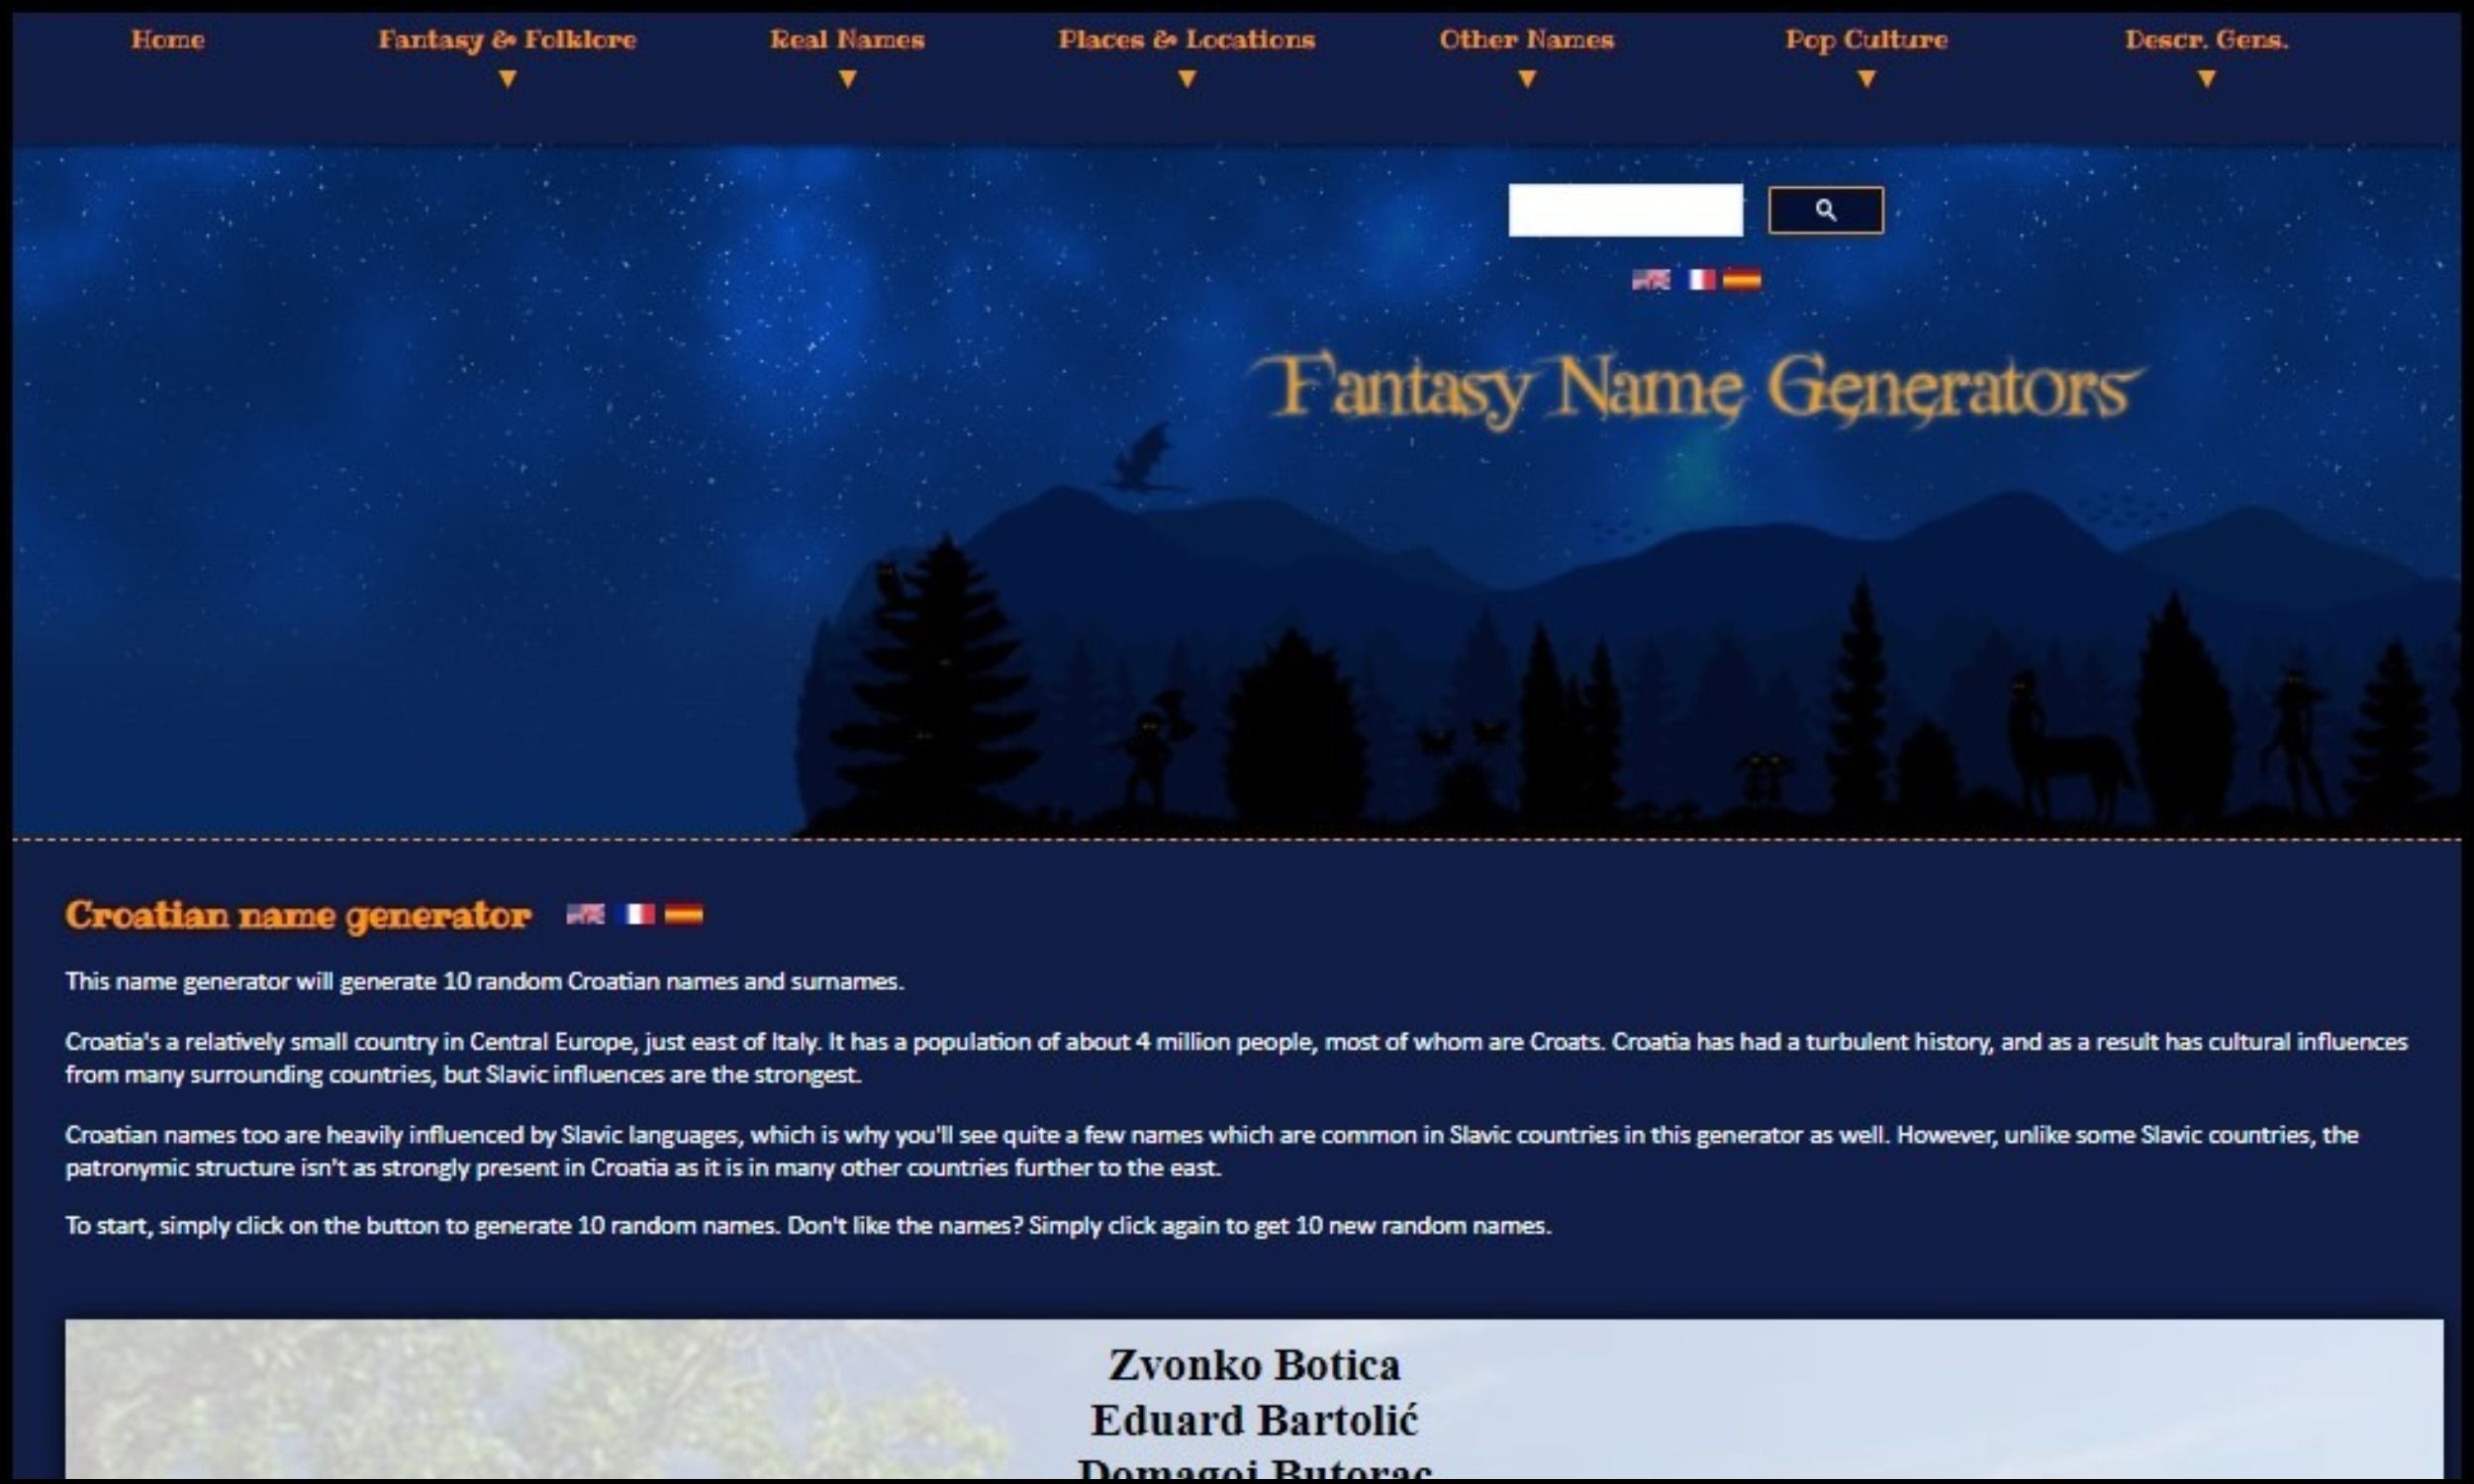 Screen name generator in Fantasy name generator